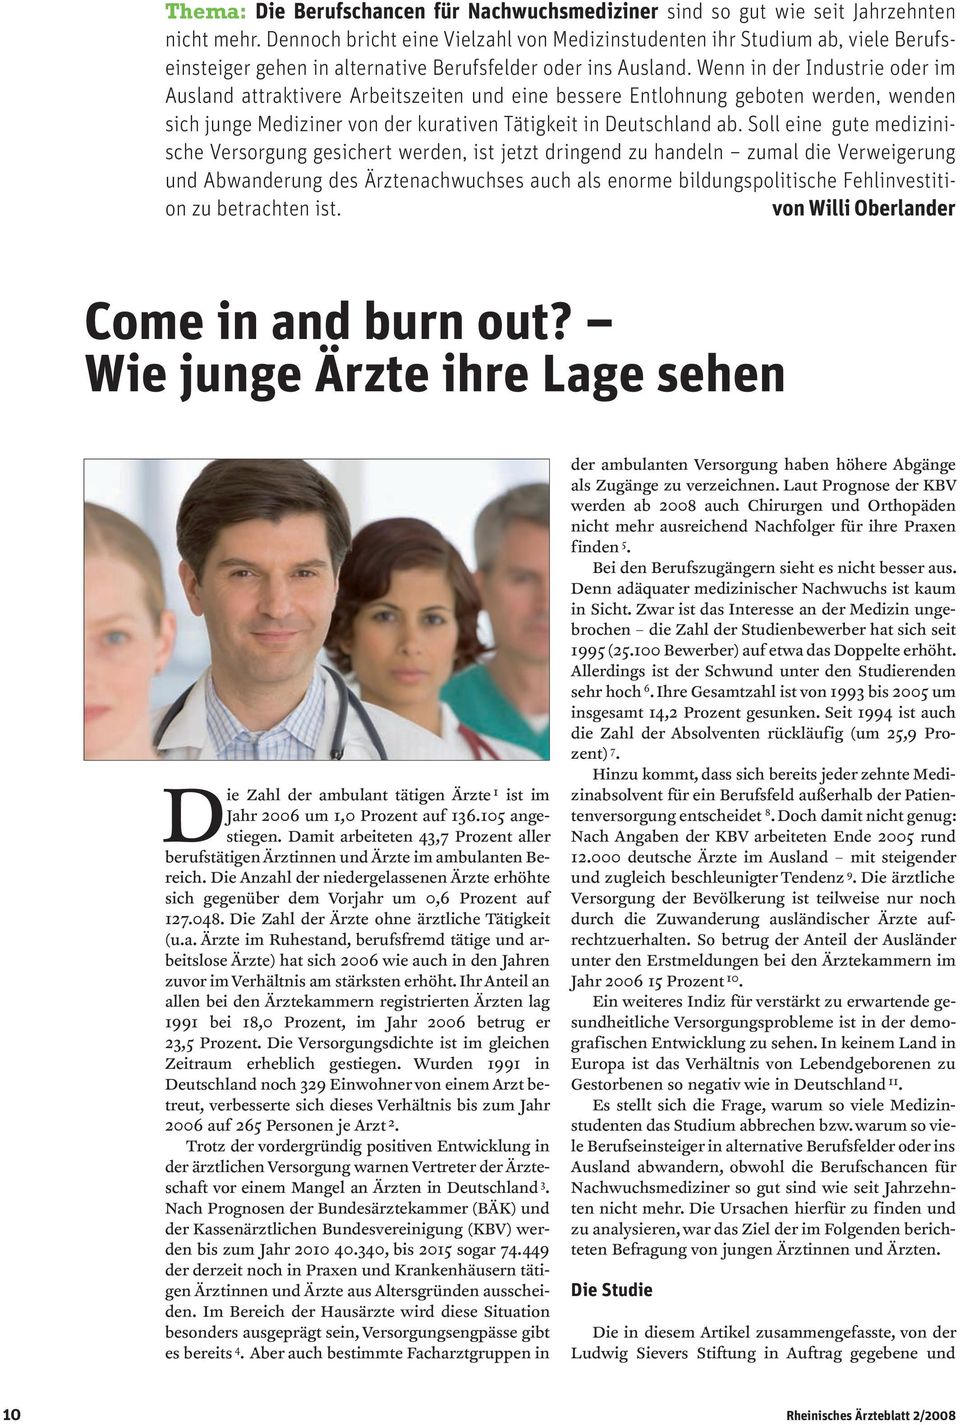 Wenn in der Industrie oder im Ausland attraktivere Arbeitszeiten und eine bessere Entlohnung geboten werden, wenden sich junge Mediziner von der kurativen Tätigkeit in Deutschland ab.